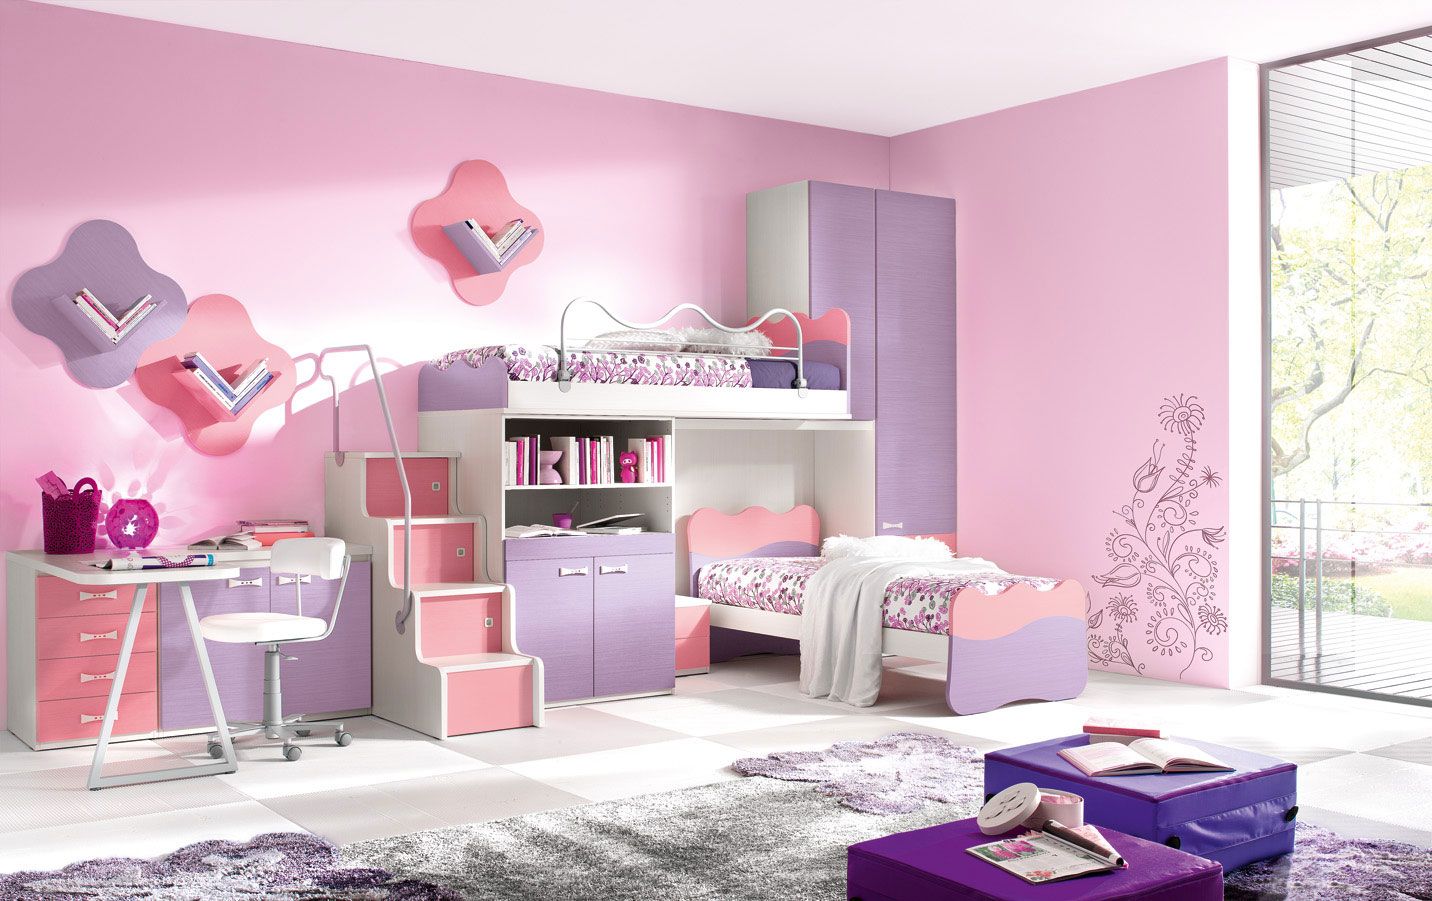 طرح اتاق خواب برای دختران